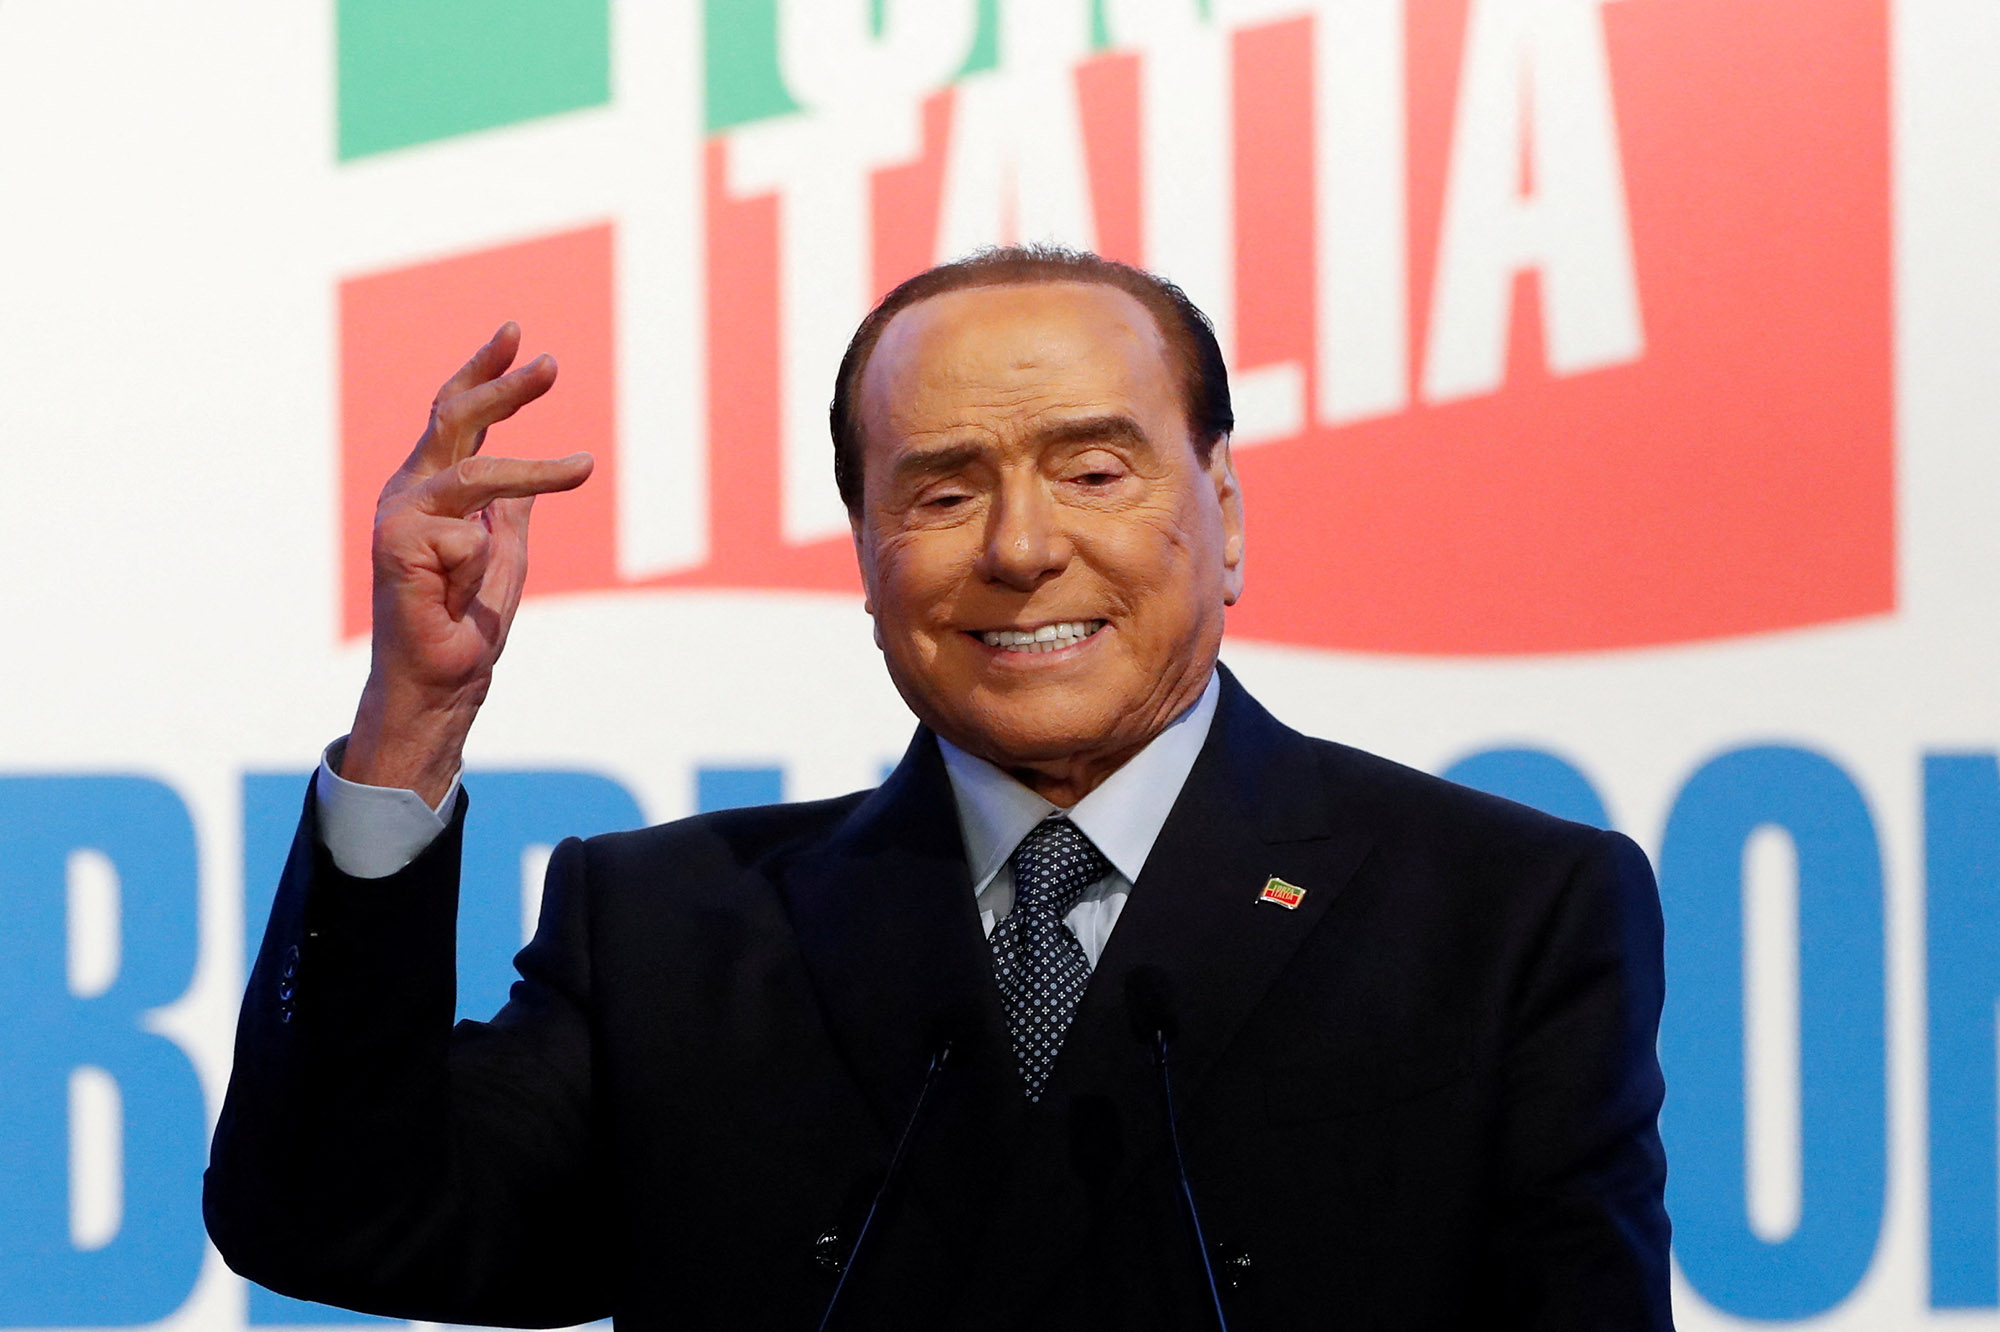 Il grande ritorno di Berlusconi in Parlamento dopo 10 anni?